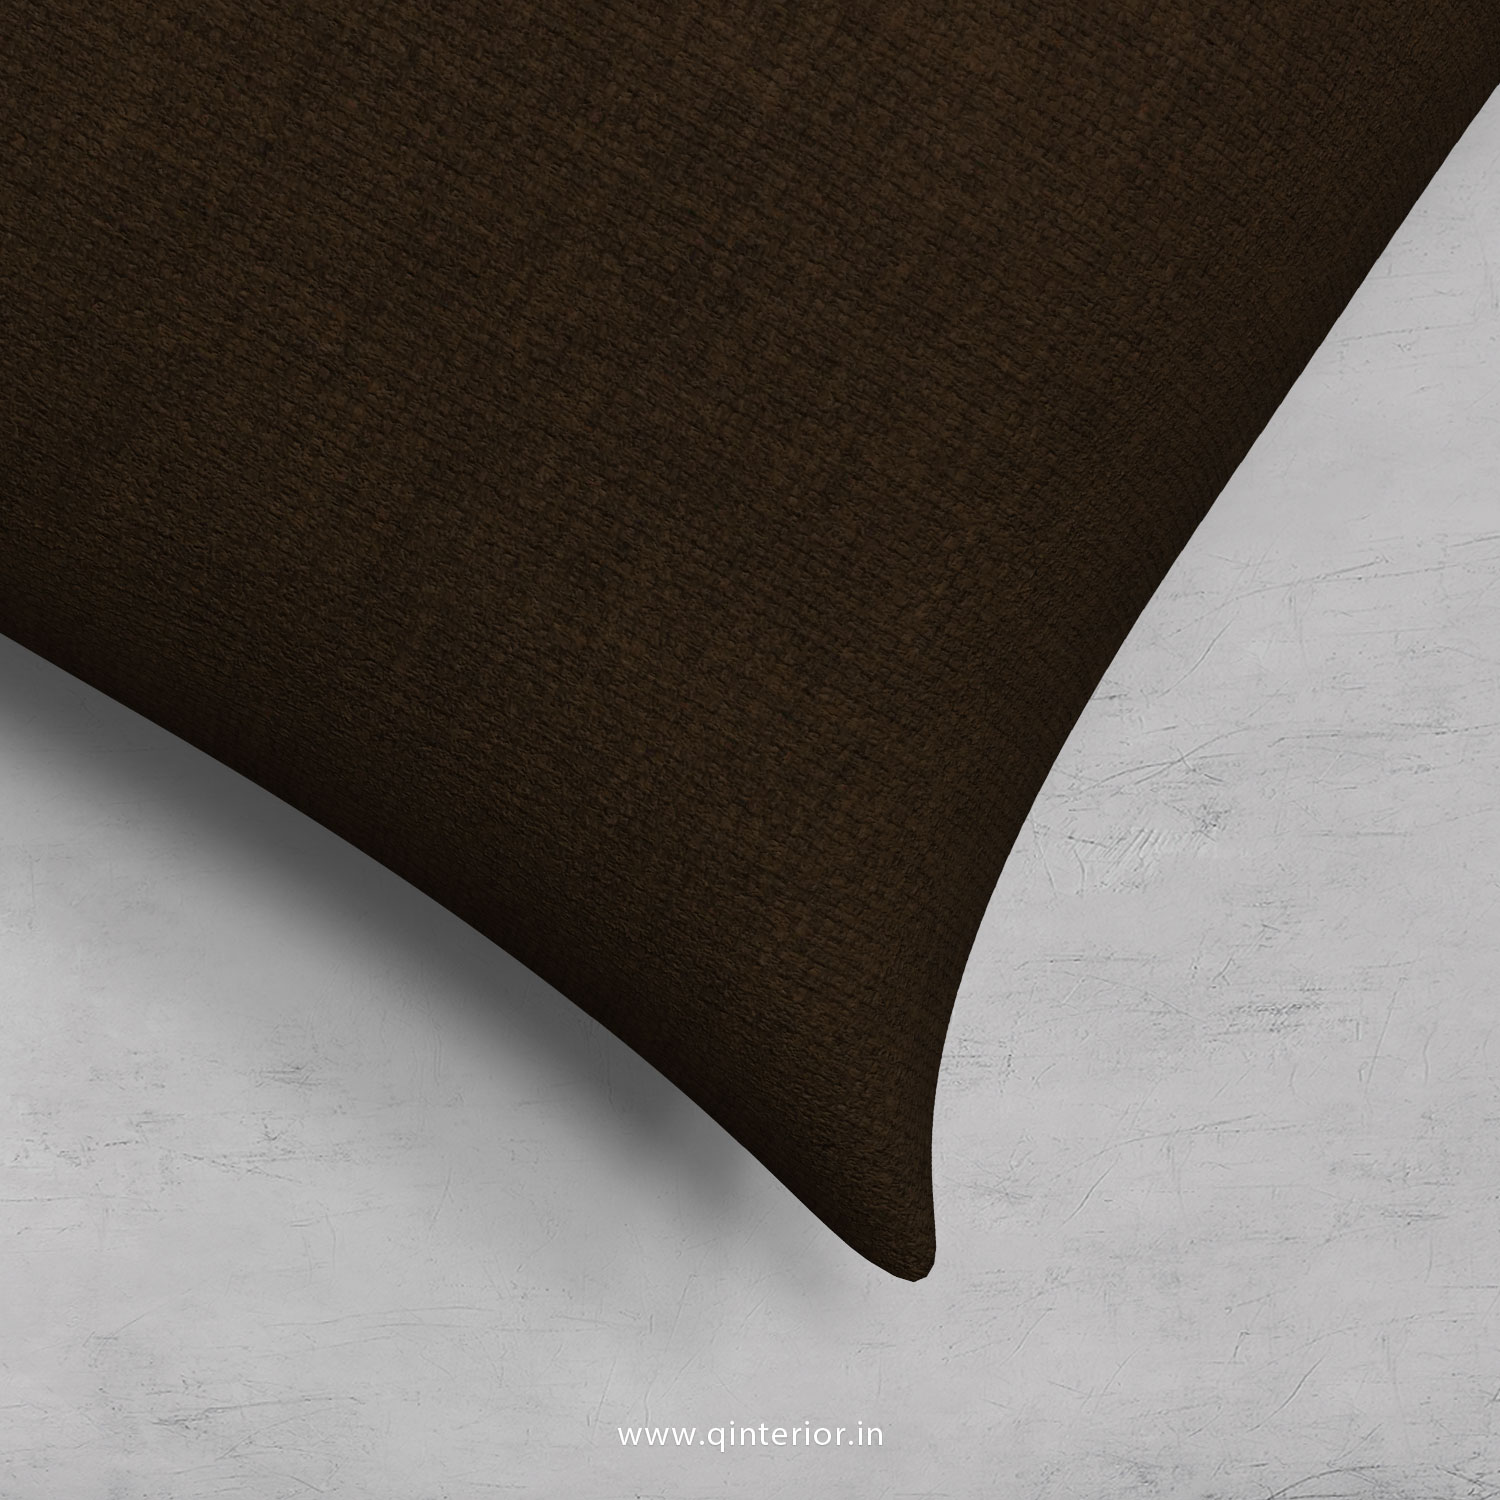 Cushion With Cushion Cover in Cotton Plain- CUS001 CP10